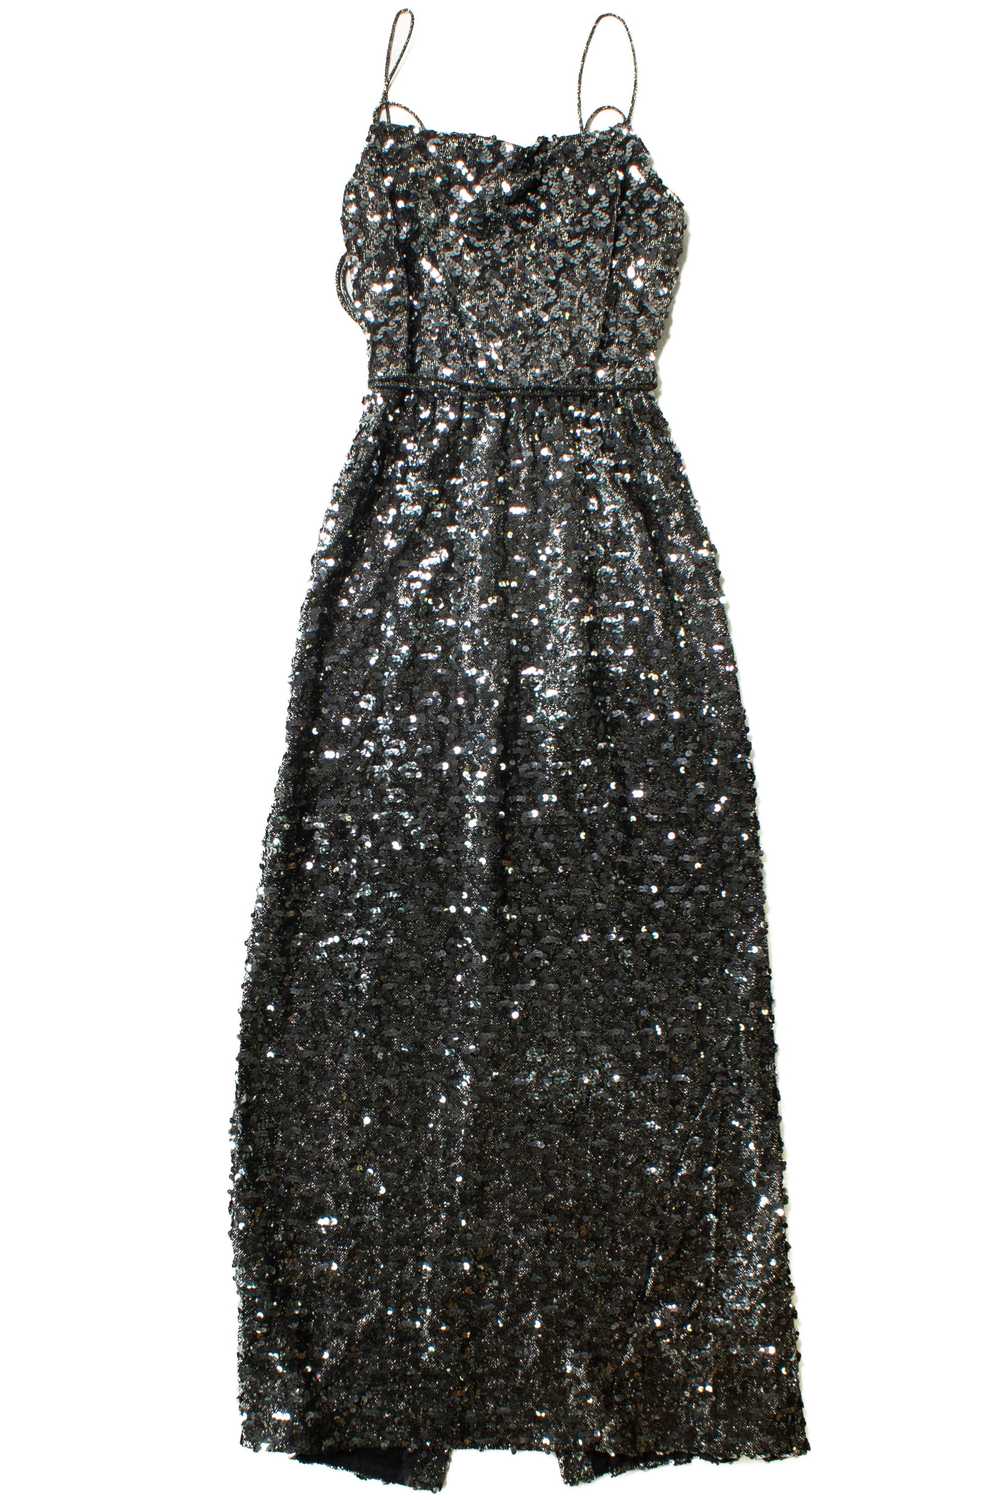 Vintage Norman Berg Black Sequin Dress - image 5